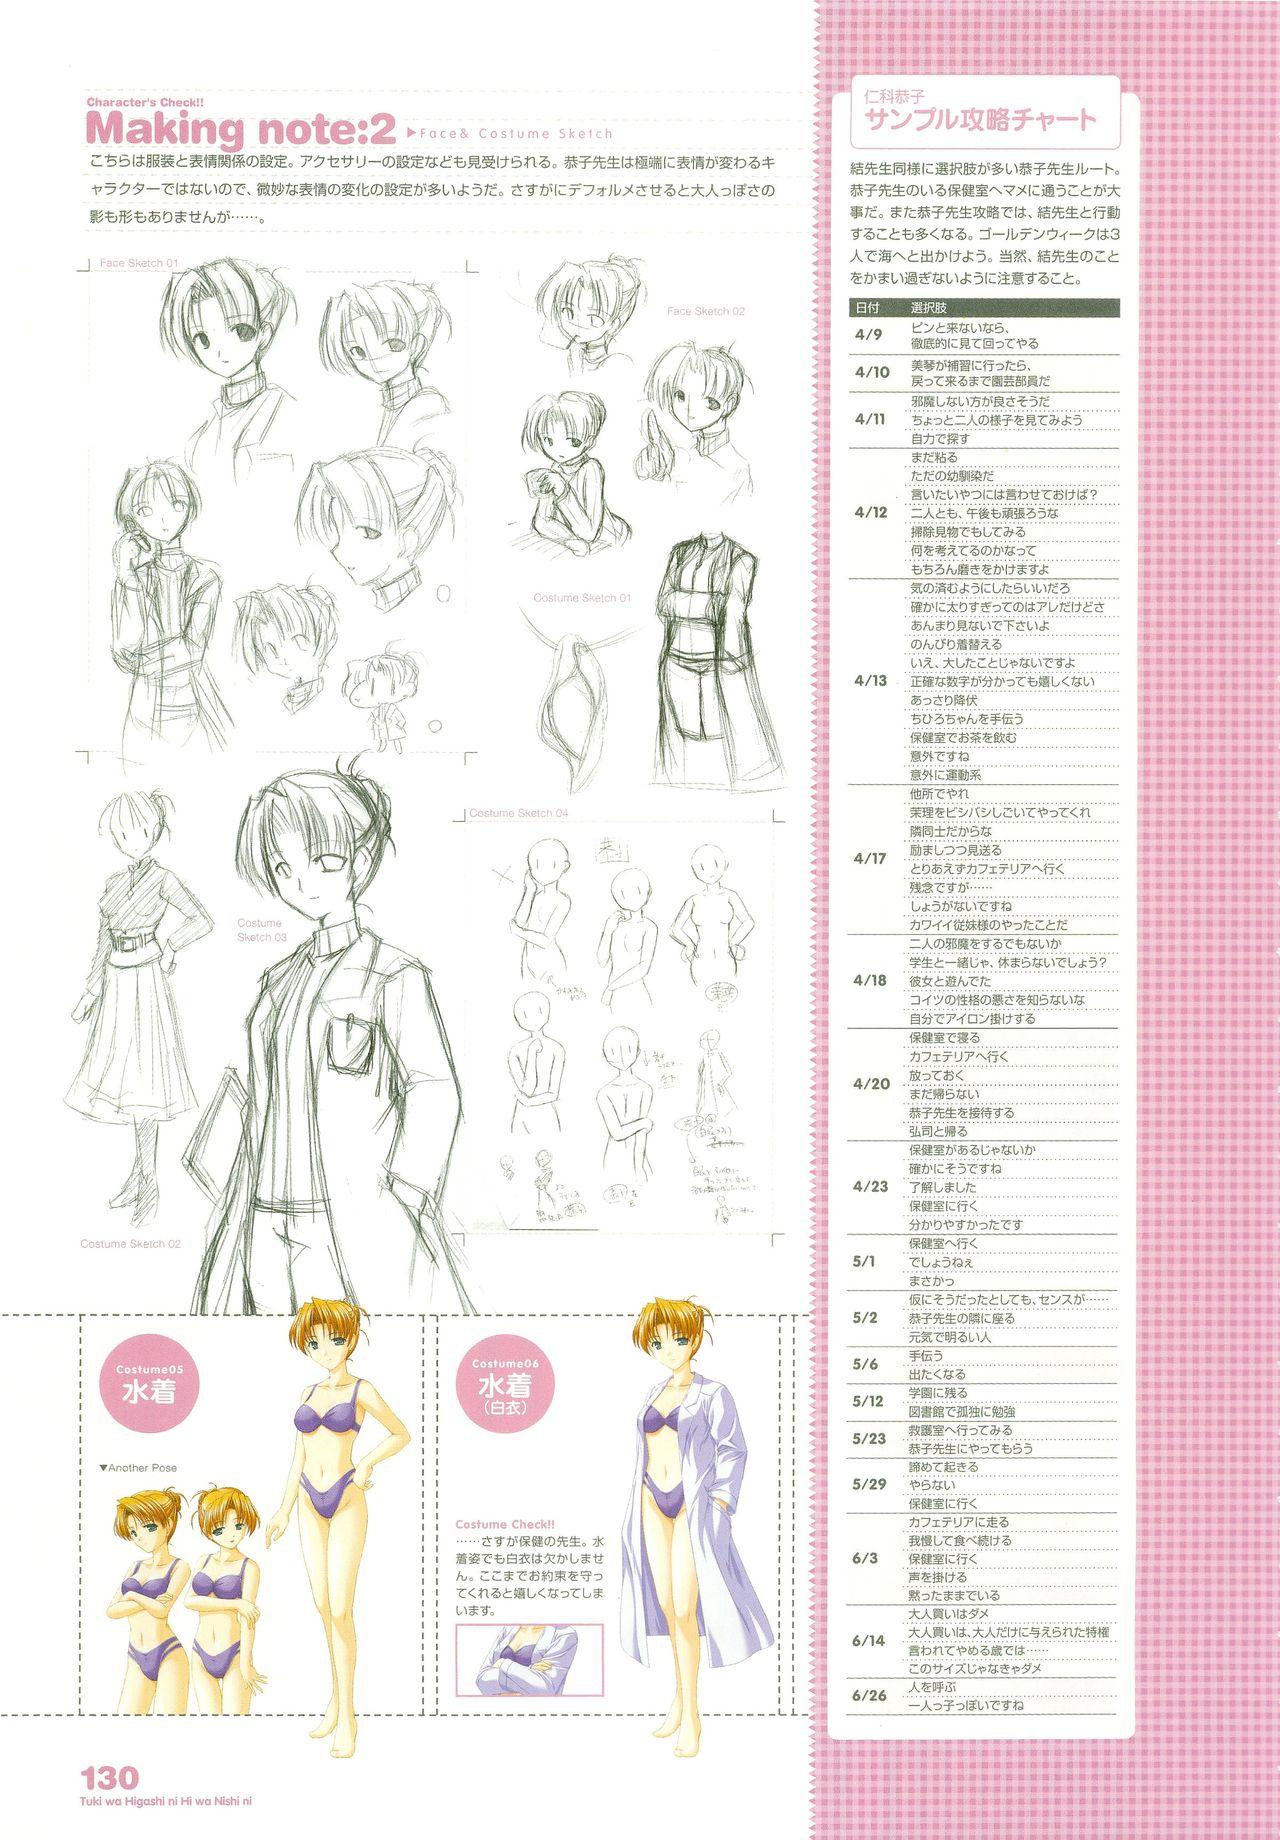 Tsuki wa Higashi ni Hi wa Nishi ni - Operation Sanctuary - Visual Fan Book Shokai Ban 161